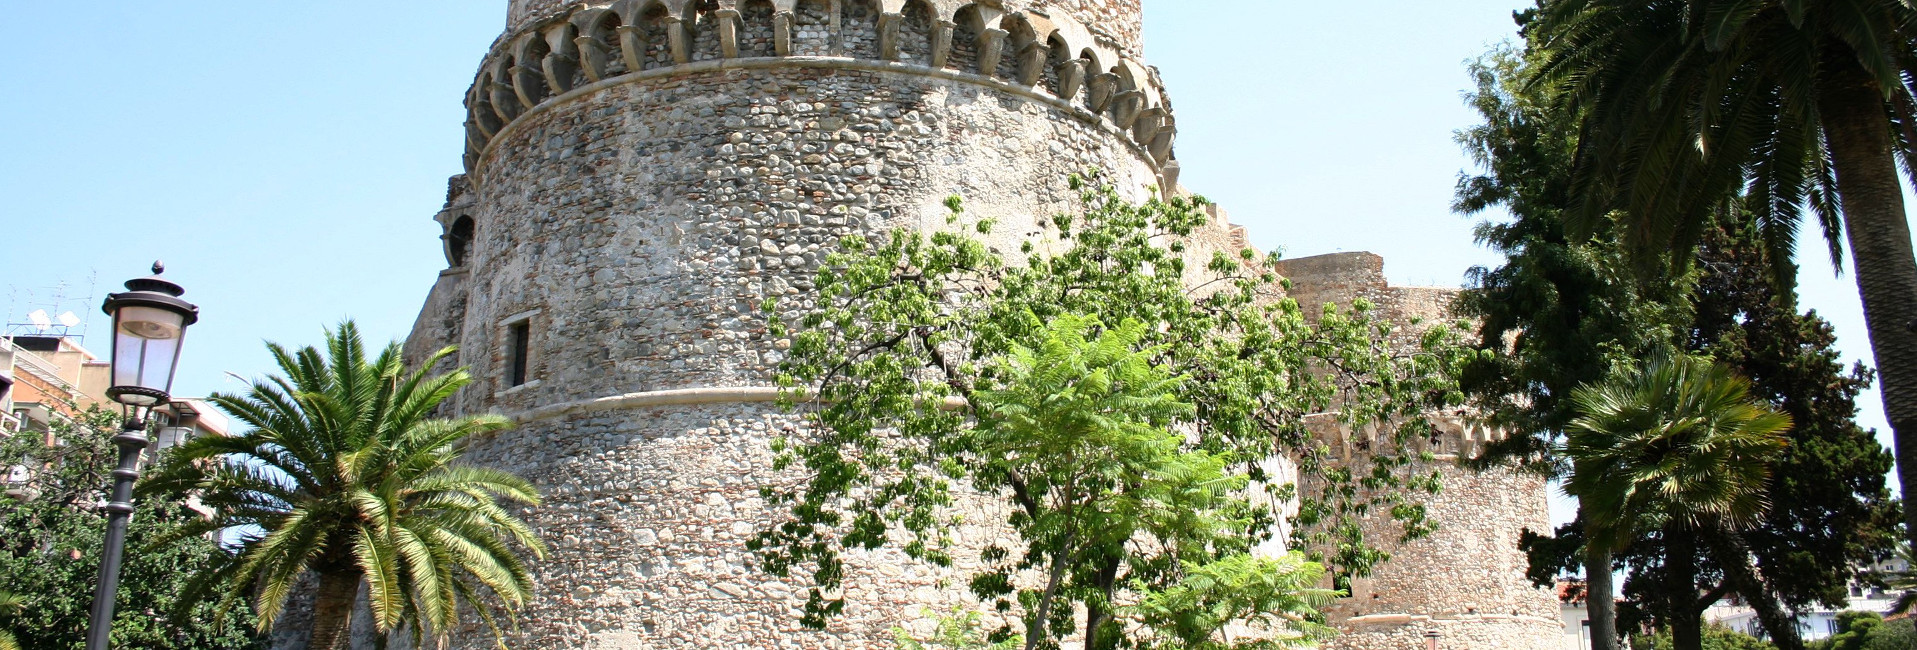 Castello Aragonese - Reggio Calabria